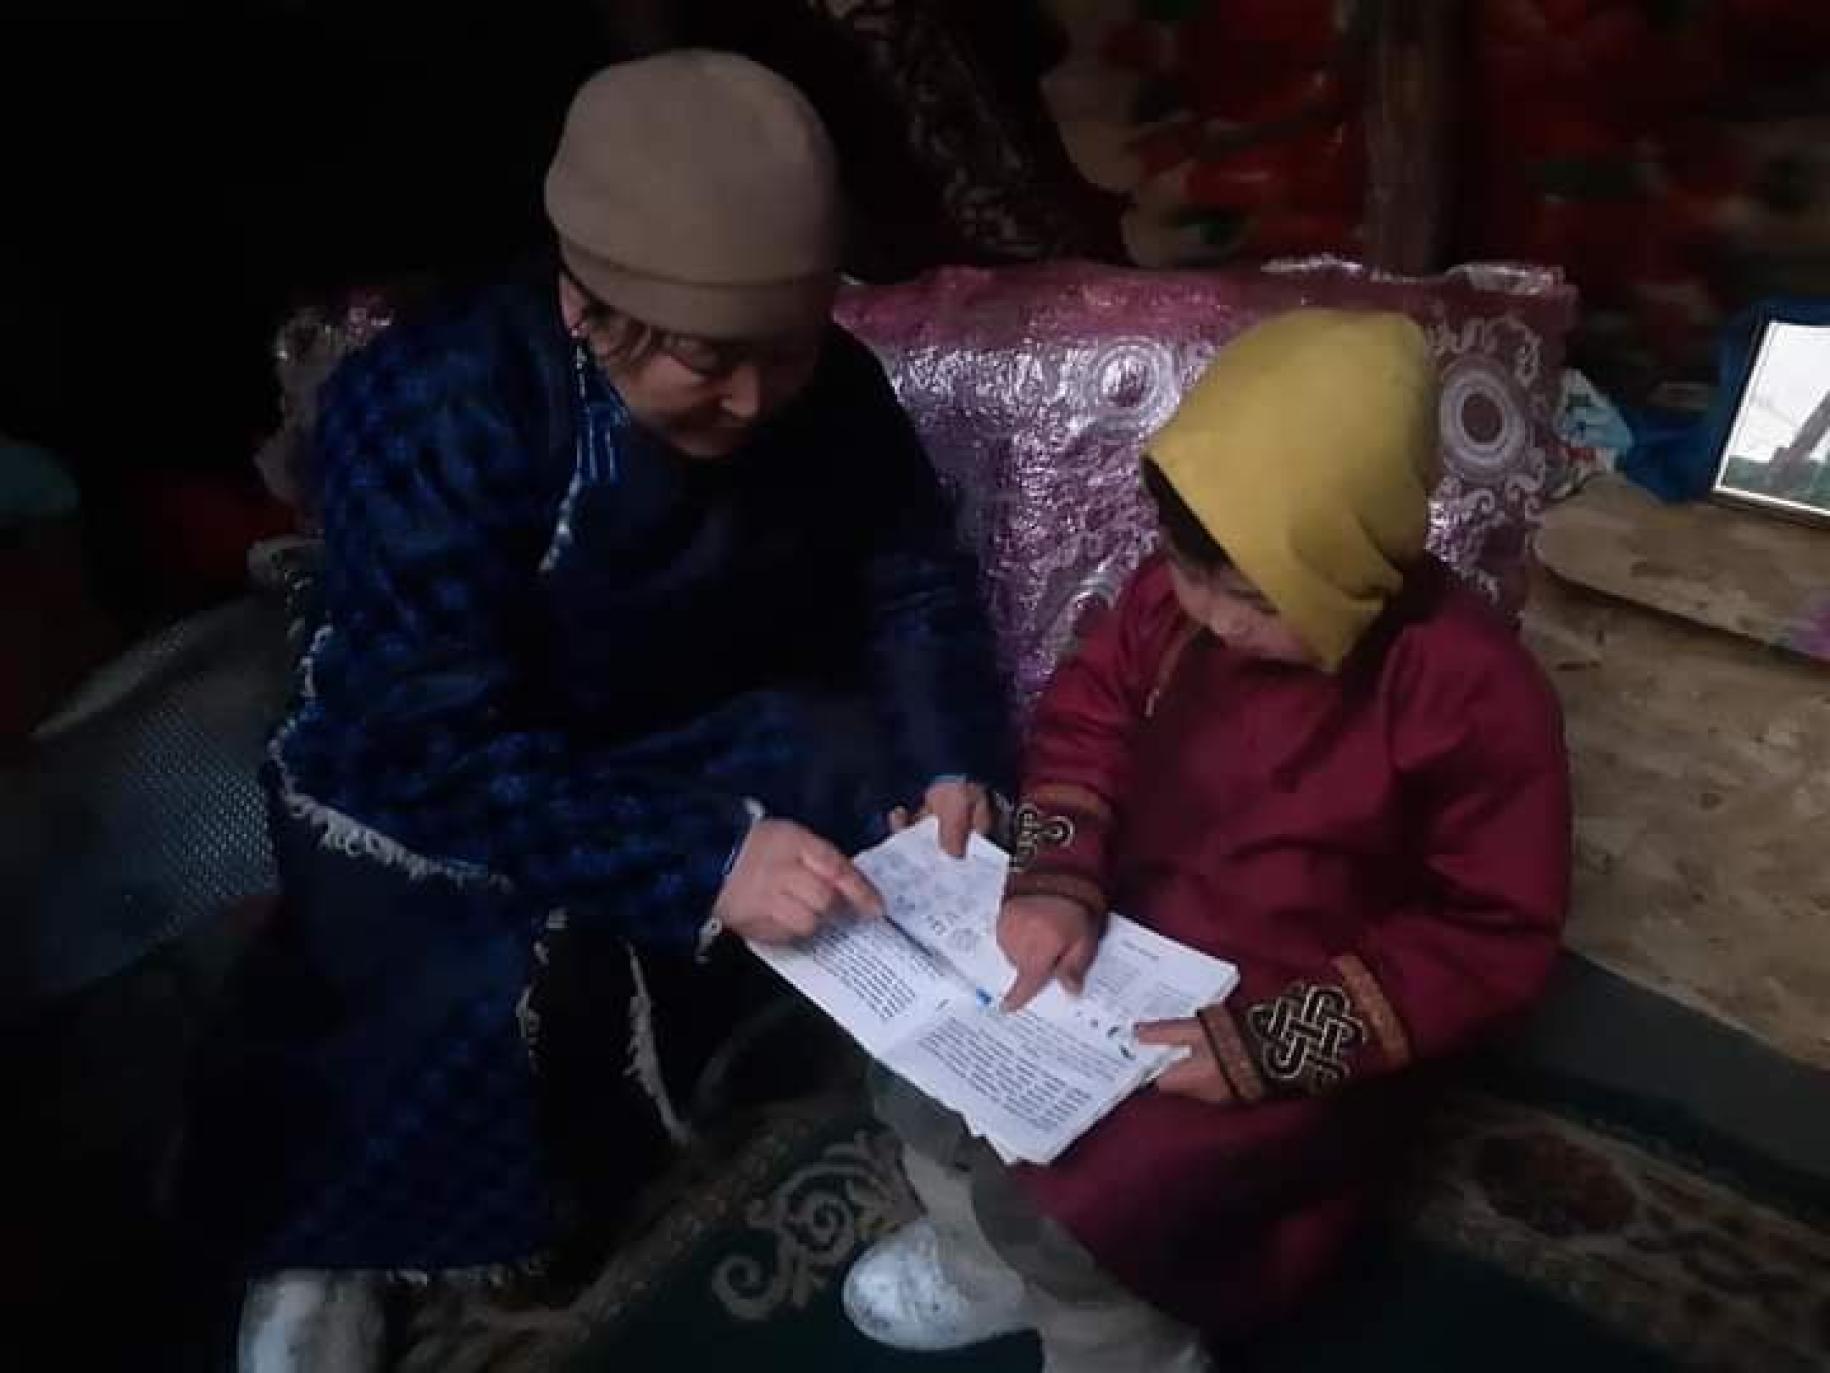 Una mujer vestida de azul ayuda a aprender a un niño vestido de rojo a entender un texto sobre una hoja de papel.